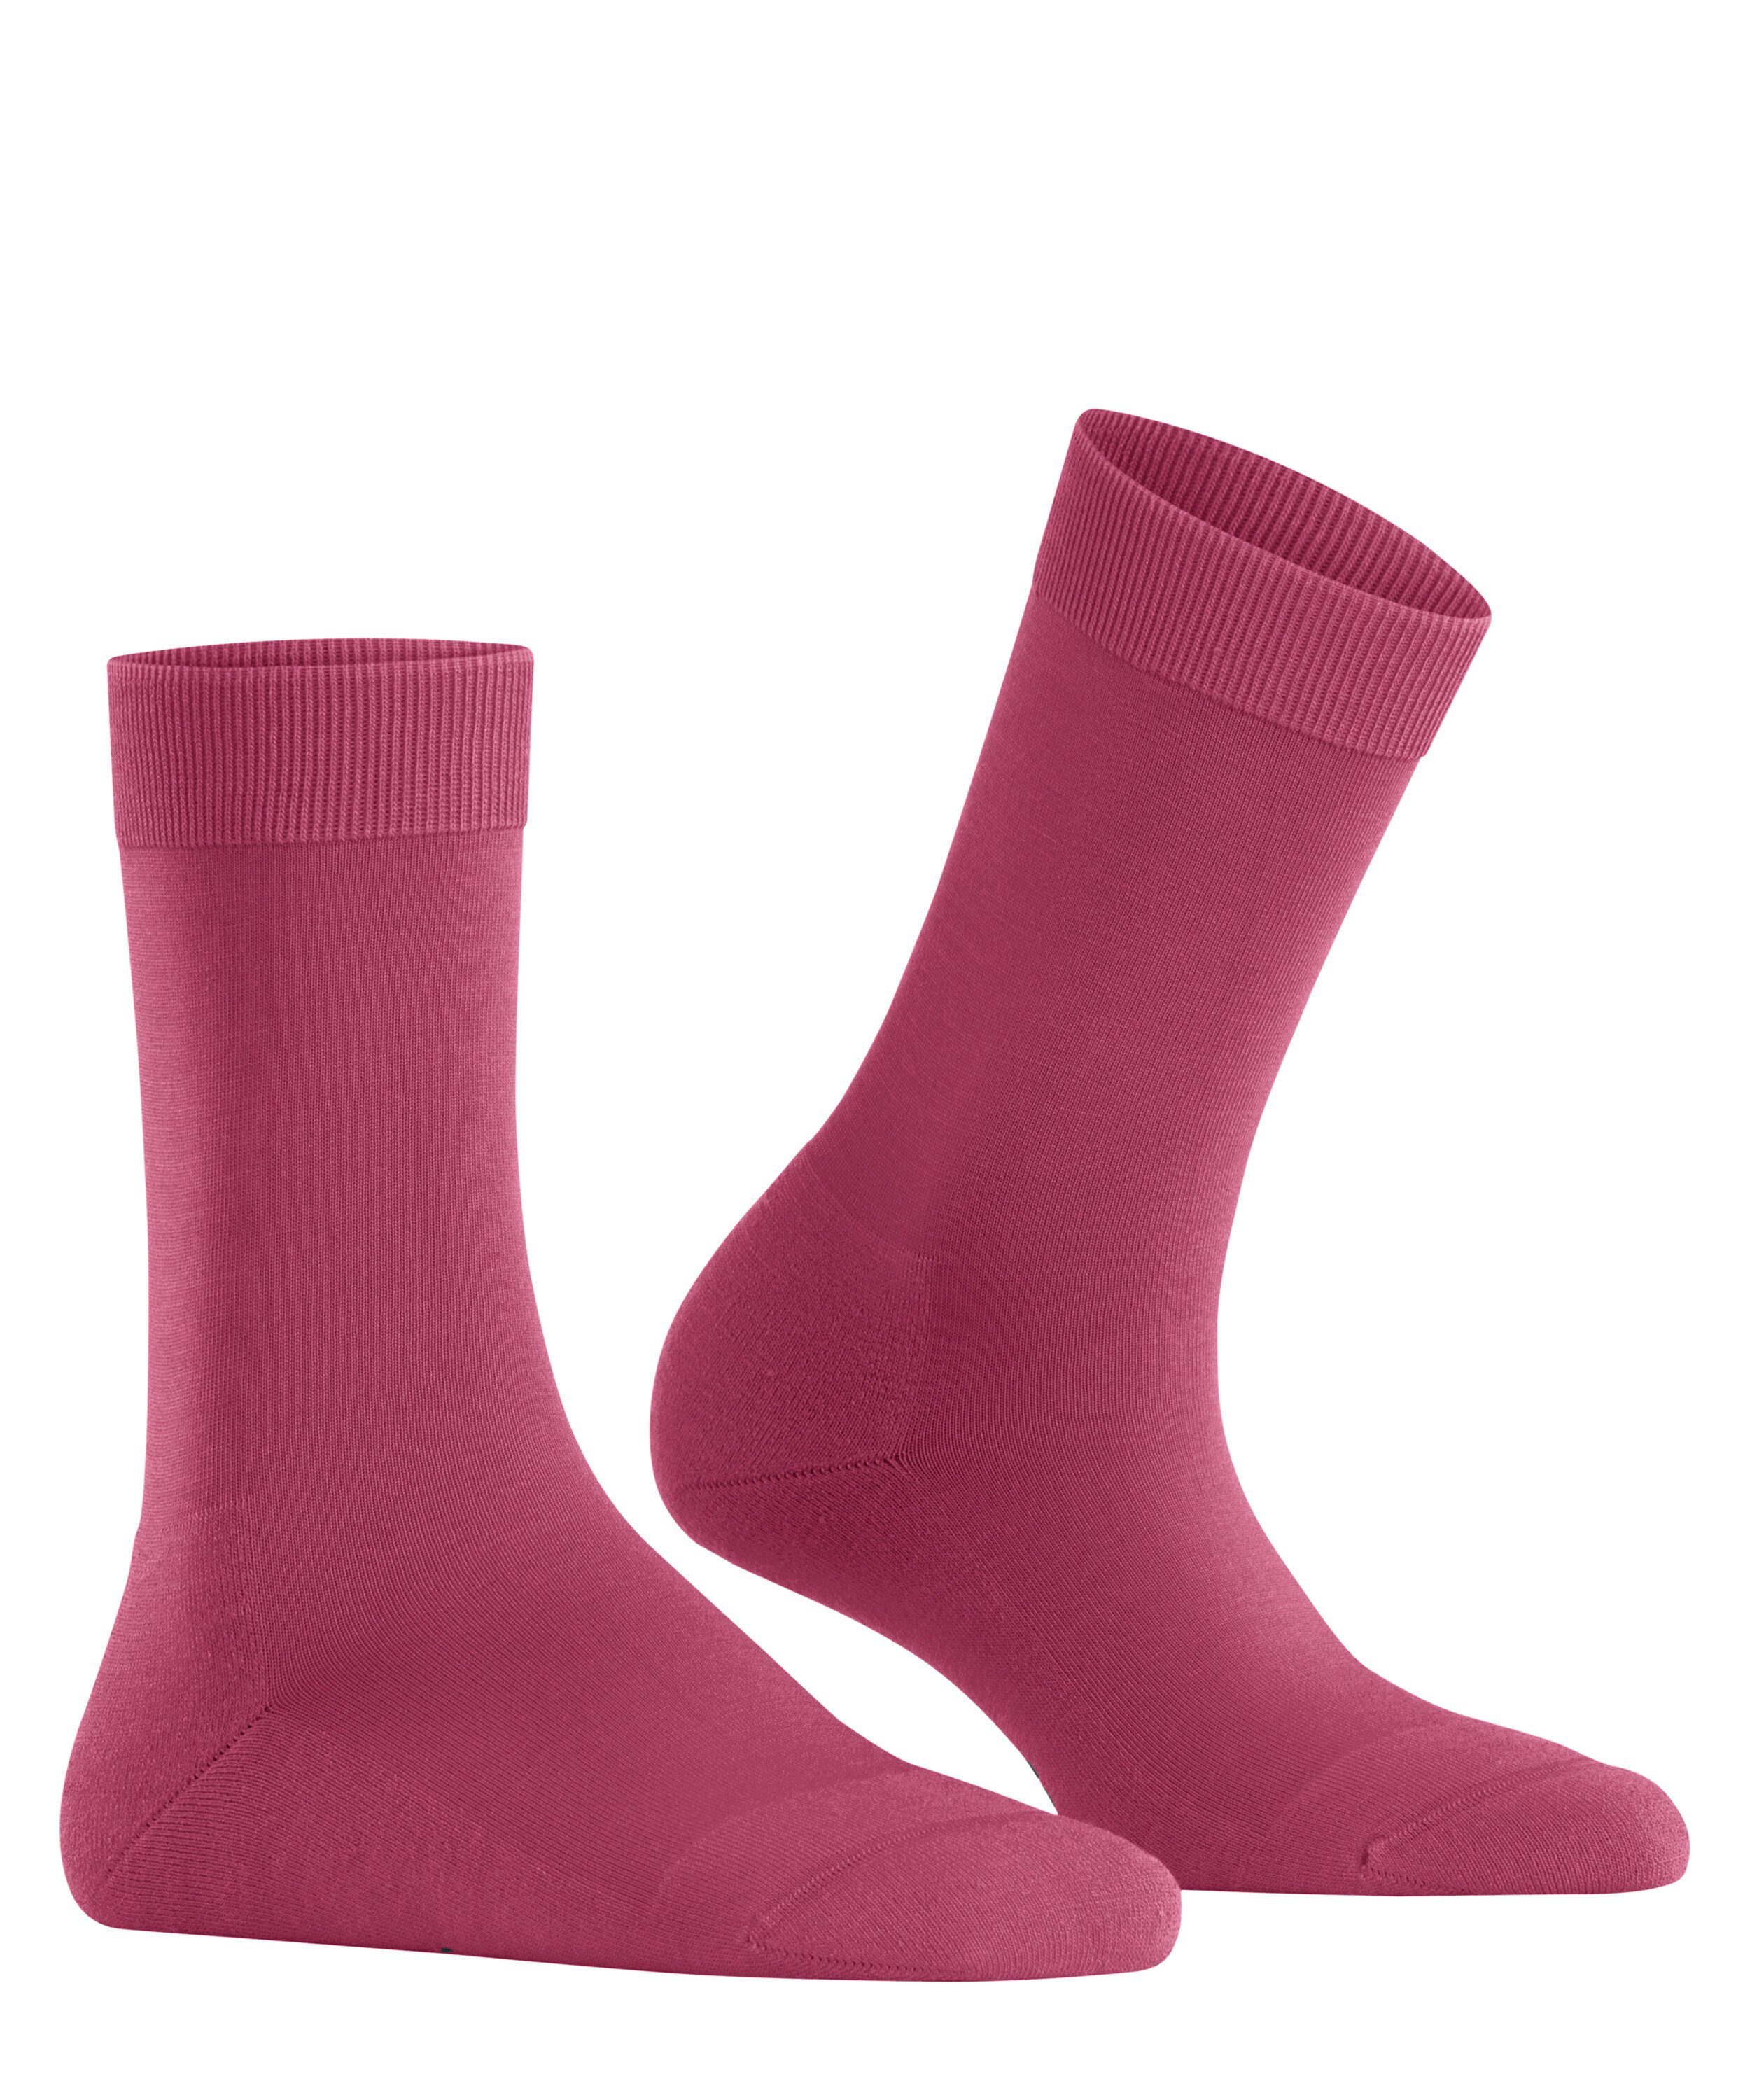 (1-Paar) Socken rose engl. FALKE (8025) ClimaWool